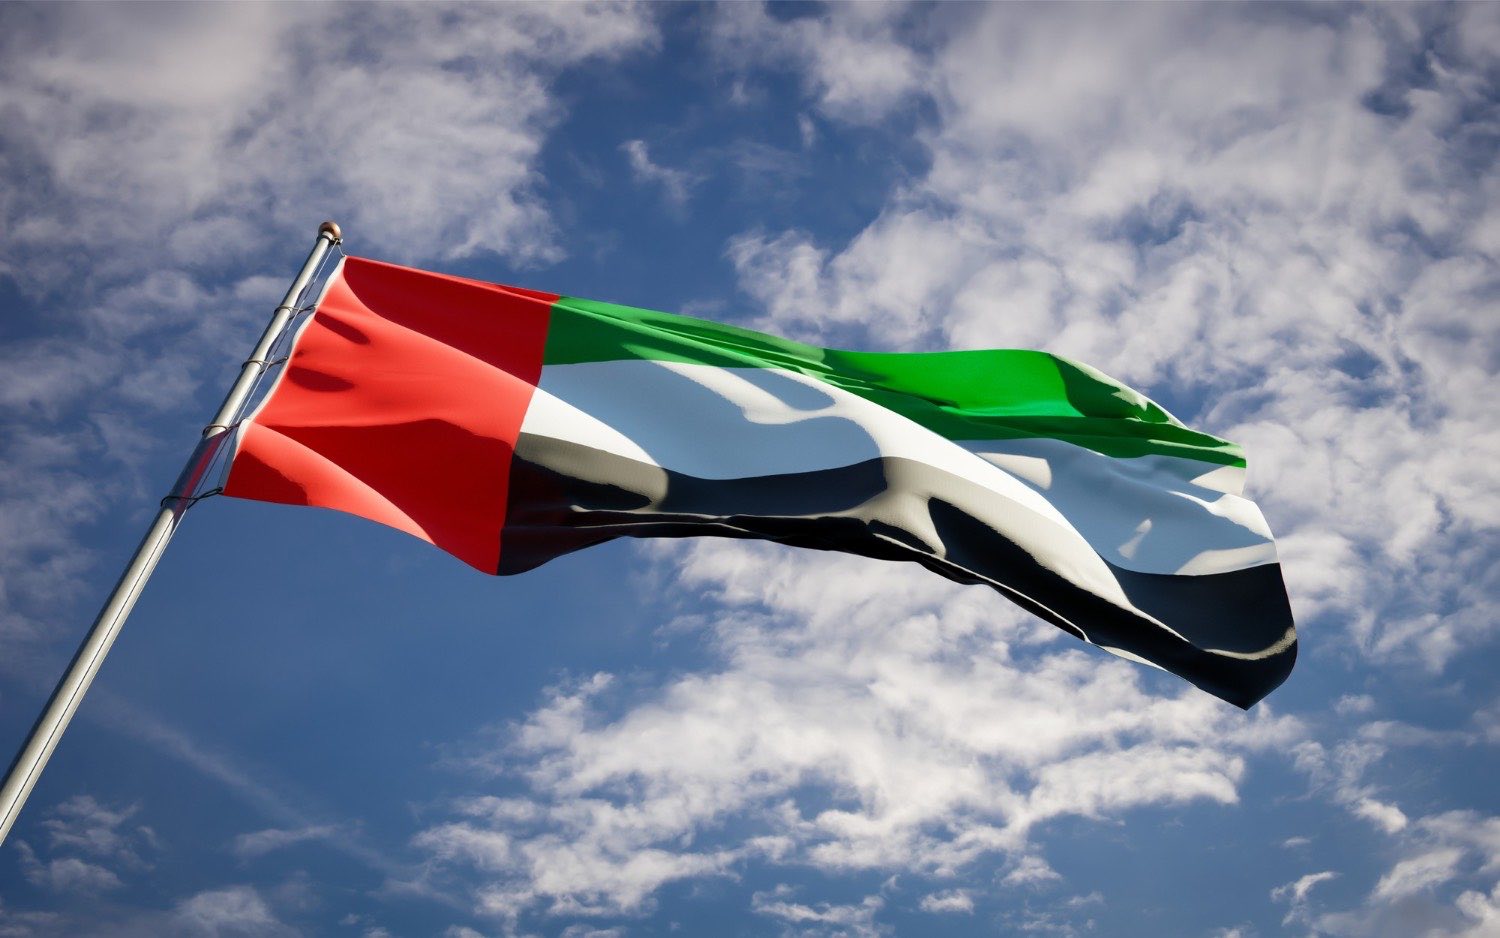 الإمارات تتصدر الدول العربية في مؤشر الاستعداد للتكنولوجيا المتقدمة